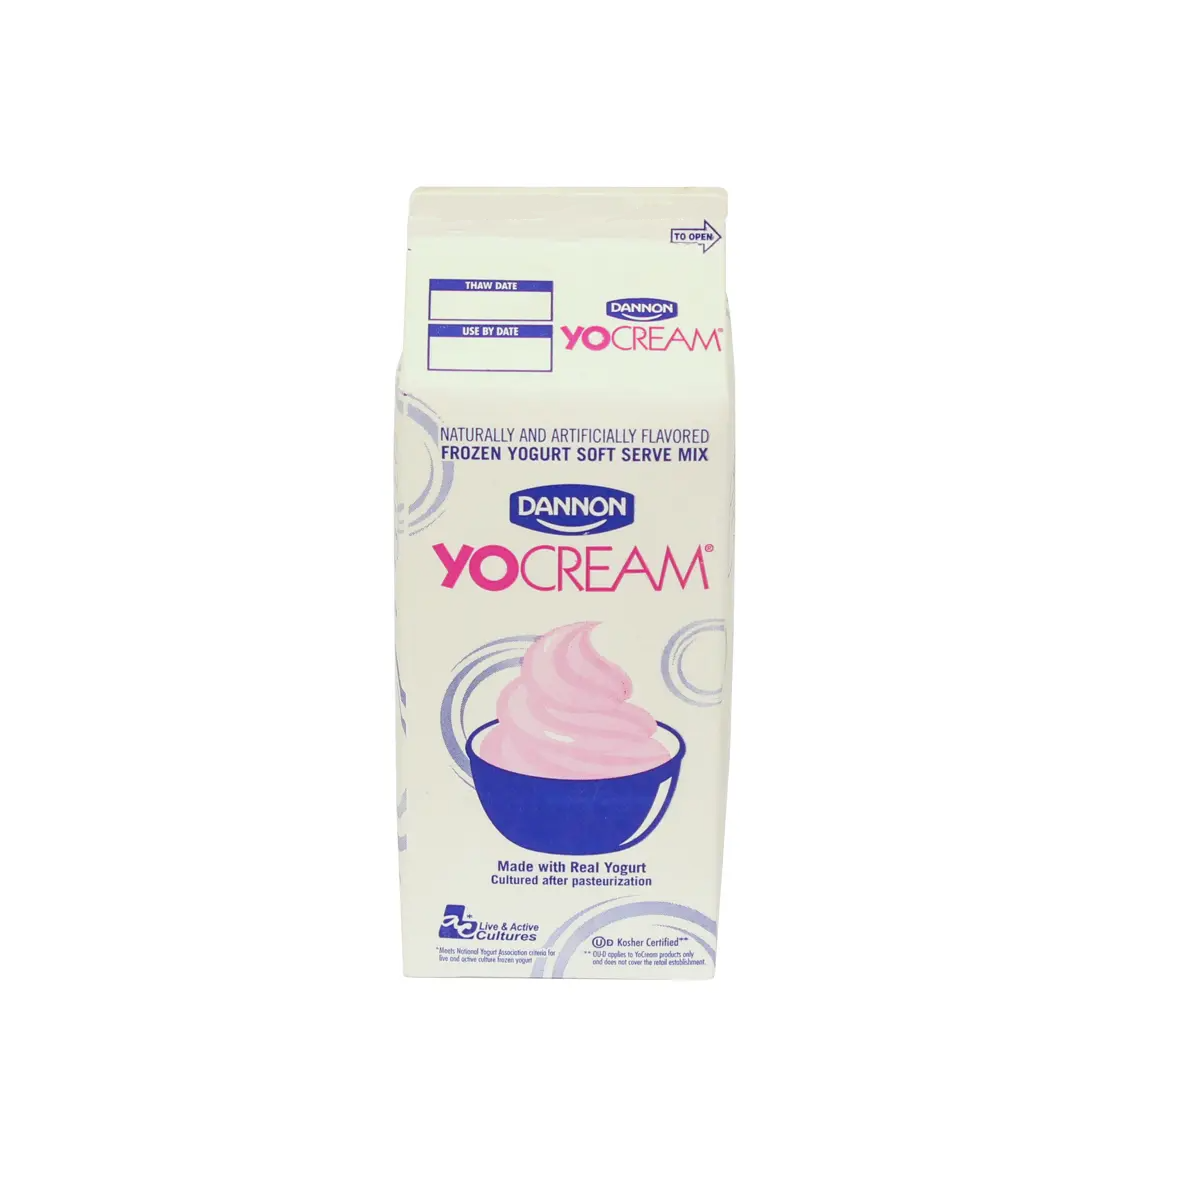 YoCream Nonfat Frozen Yogurt Original Tart 6 units per case